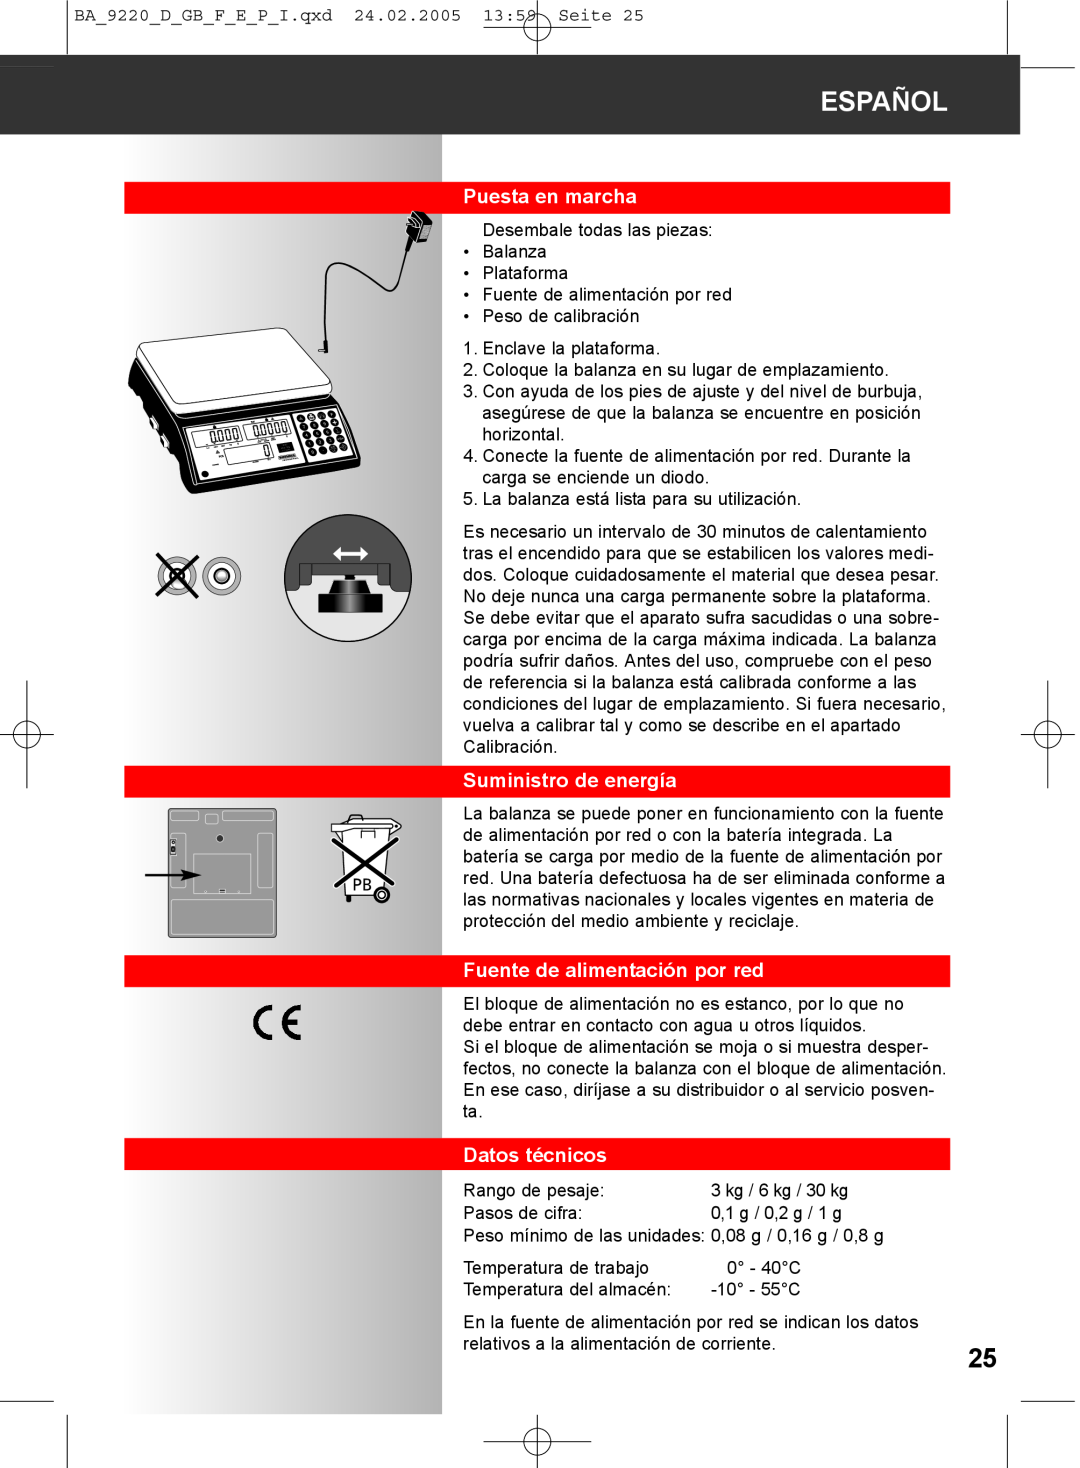 Soehnle 9220 manual Puesta en marcha, Suministro de energía, Fuente de alimentación por red, Datos técnicos, Español 